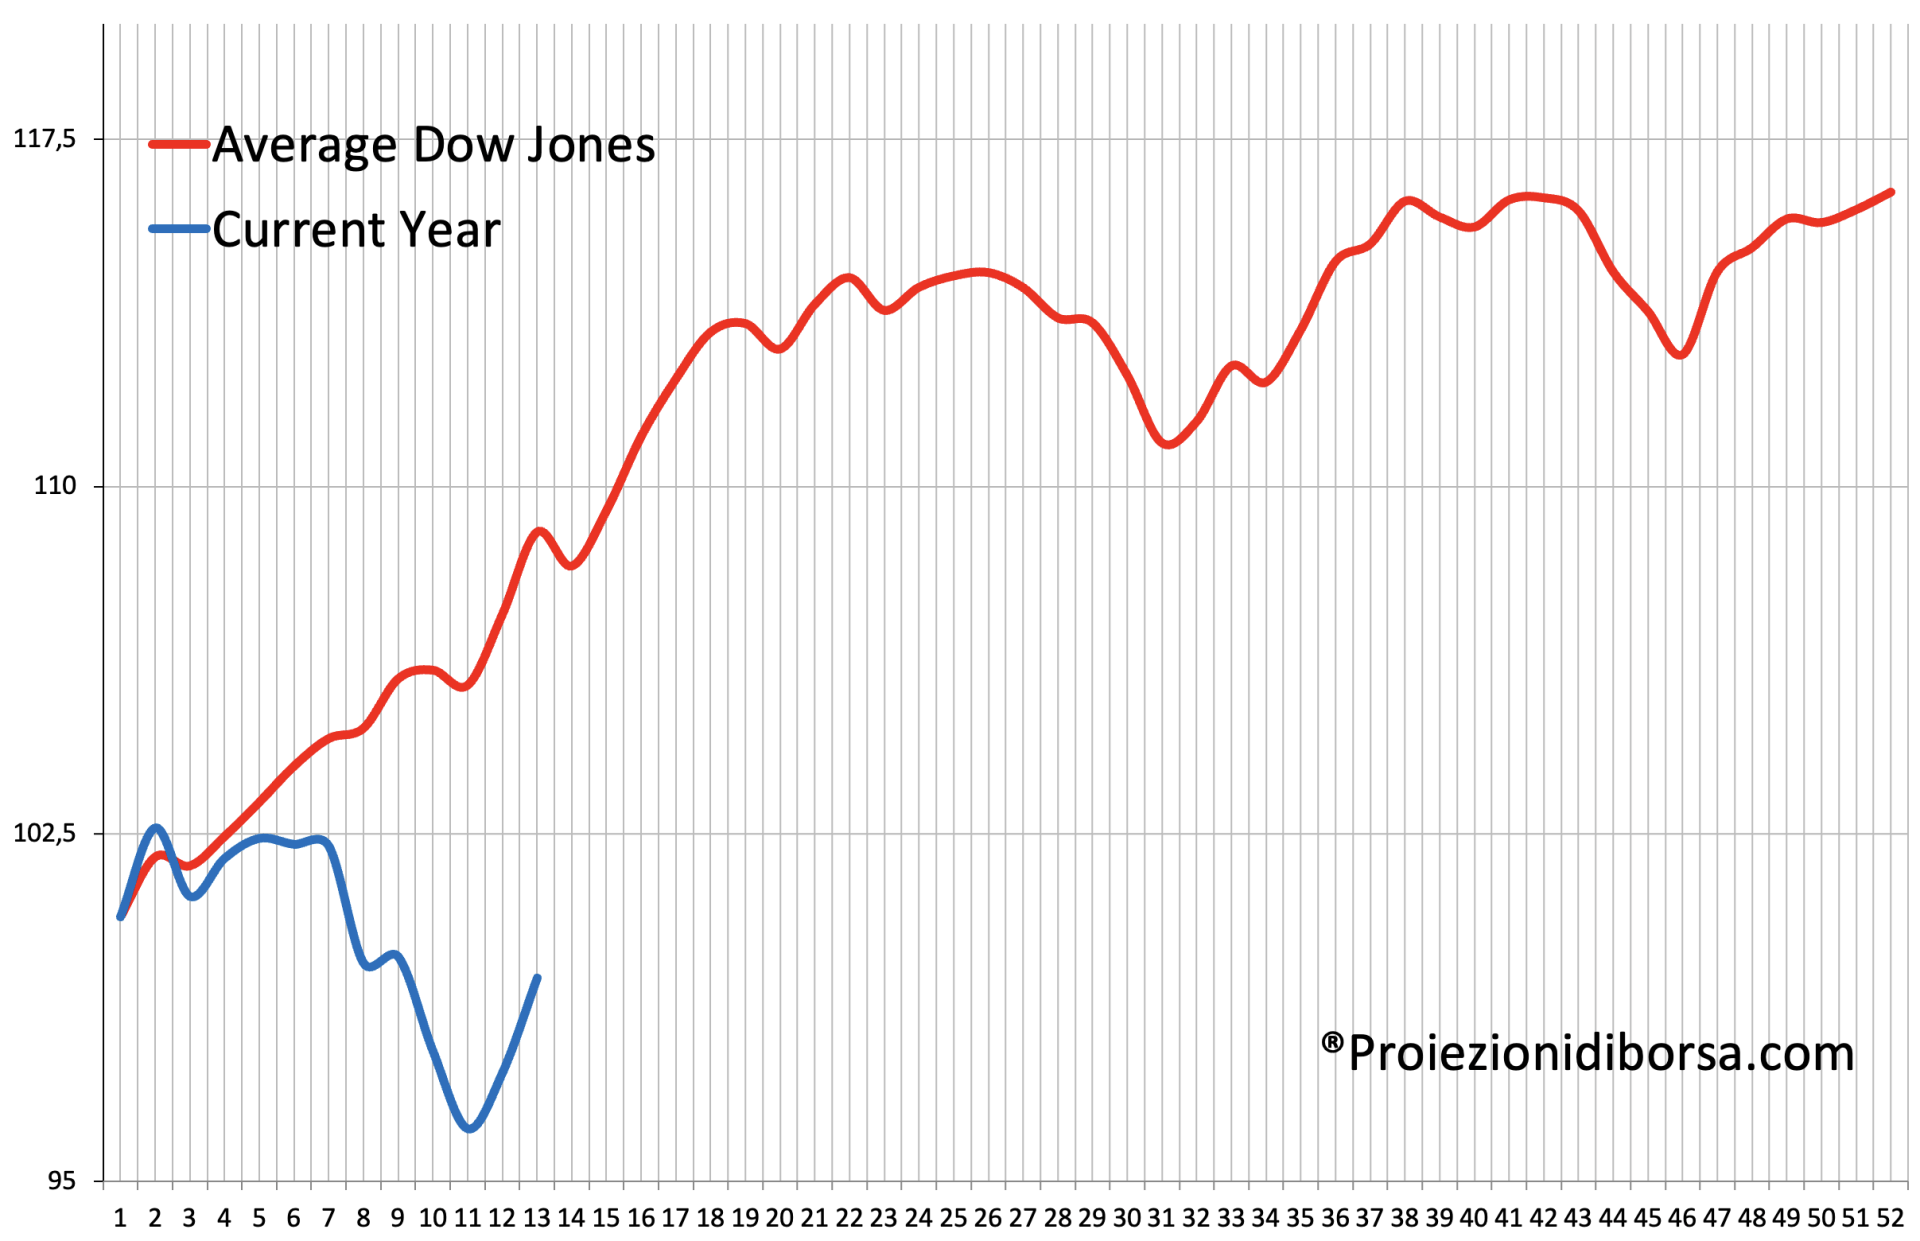 Confronto tra il frattale previsionale elaborato su oltre 100 anni di storia (linea rossa) e l’andamento reale del Dow Jones (linea blu)